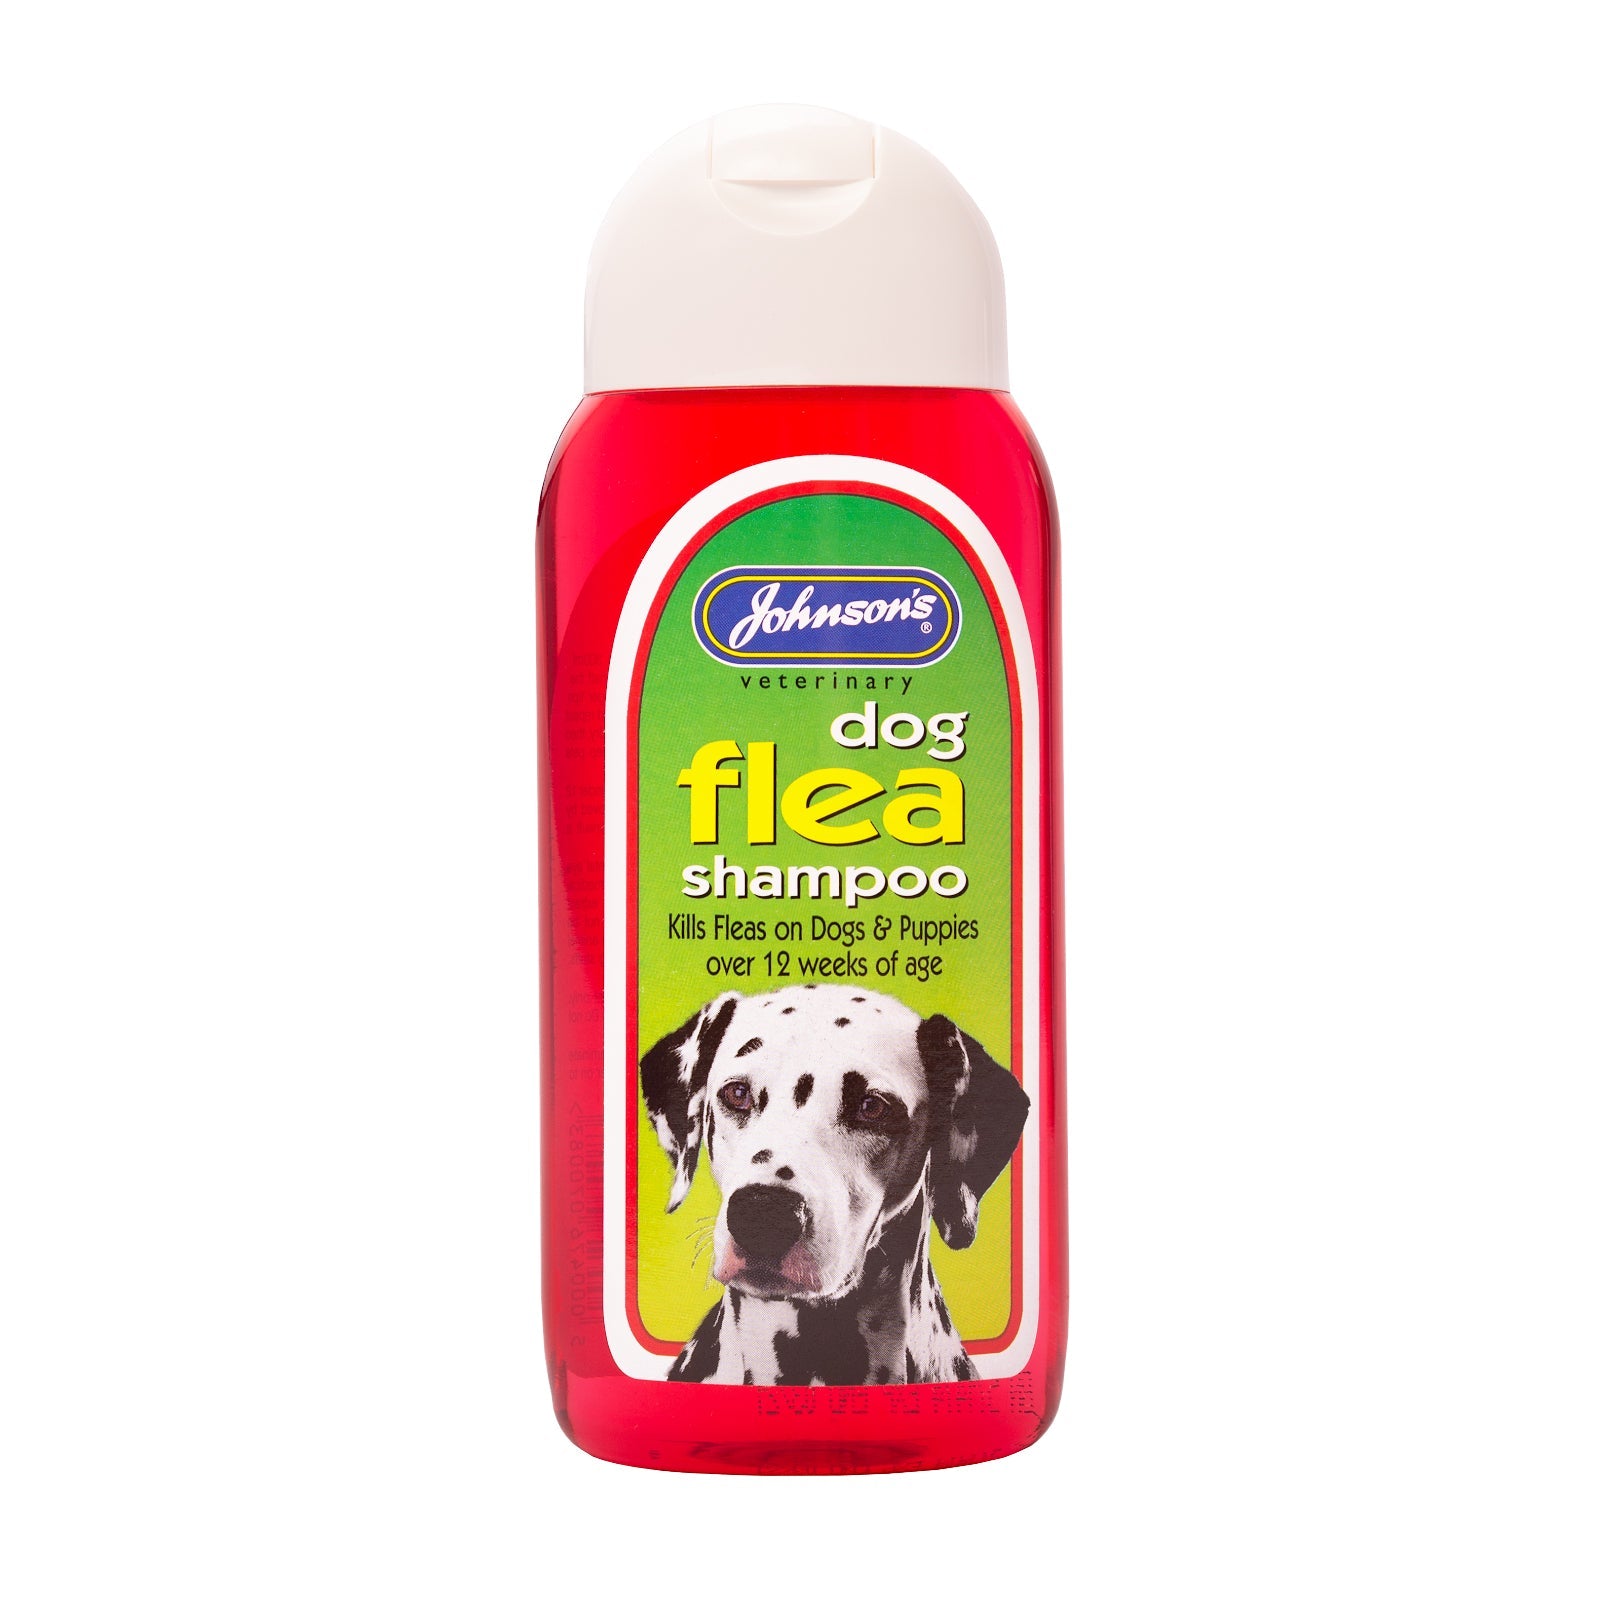 Johnsons Dog Flea Shampoo, Johnsons Veterinary, 6x200ml